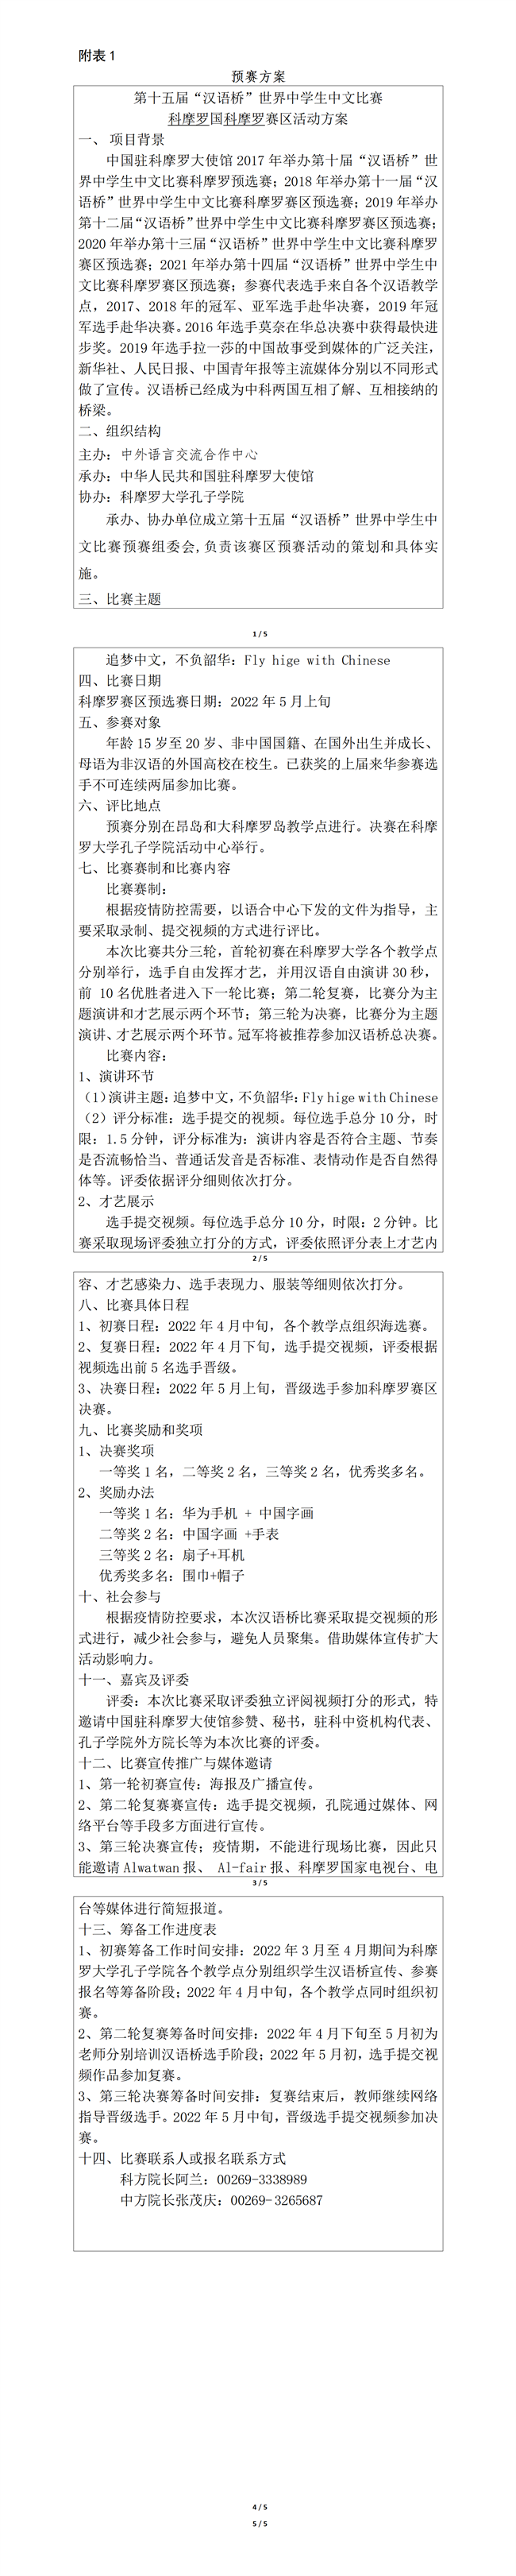 科摩罗2022“汉语桥”世界中学生中文比赛预赛组织工作参考流程(1)_01.png